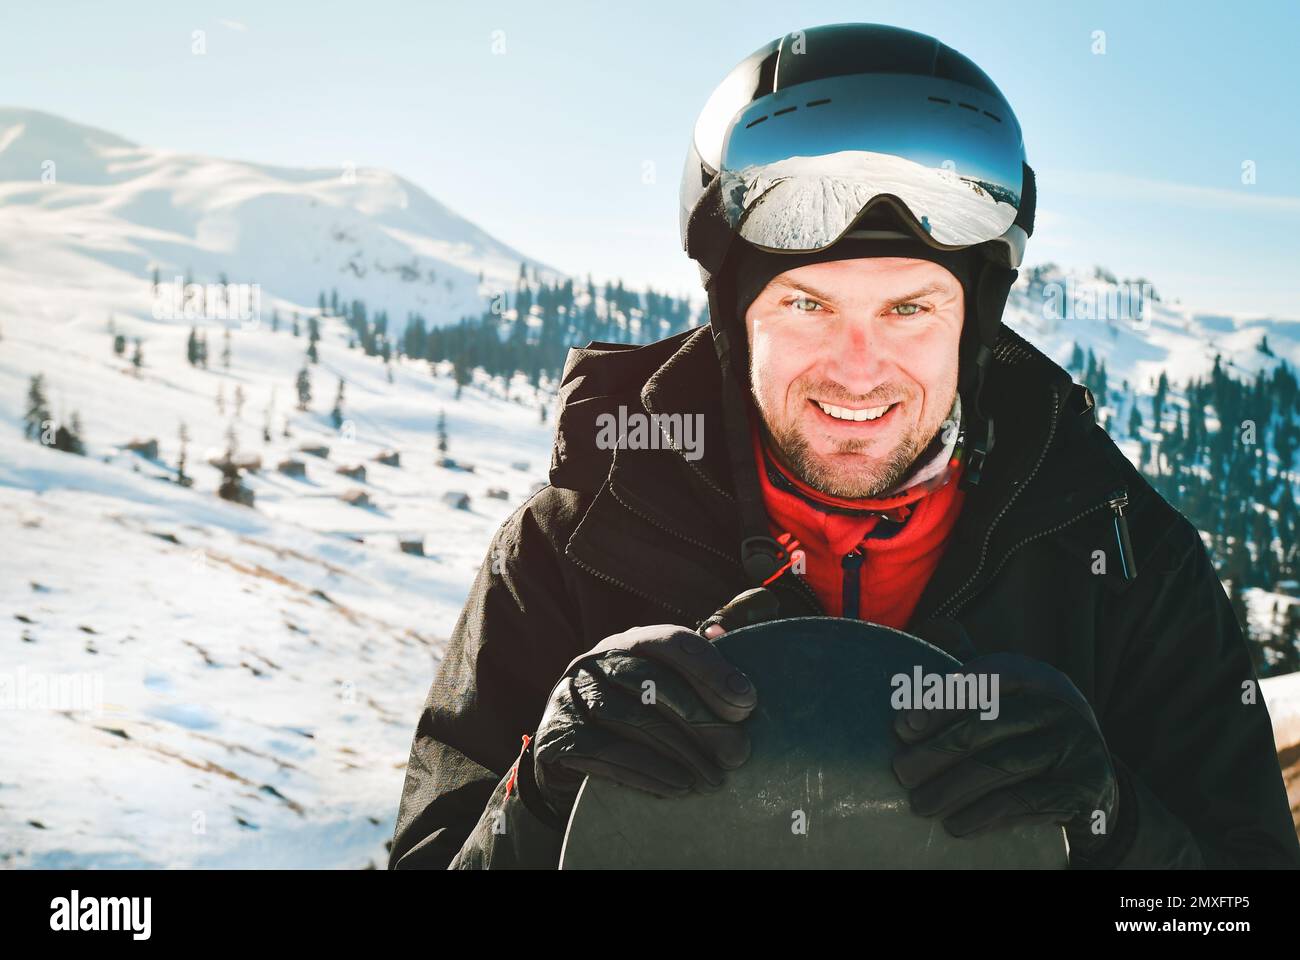 Gafas de esquí de un hombre con el reflejo de las montañas fondo